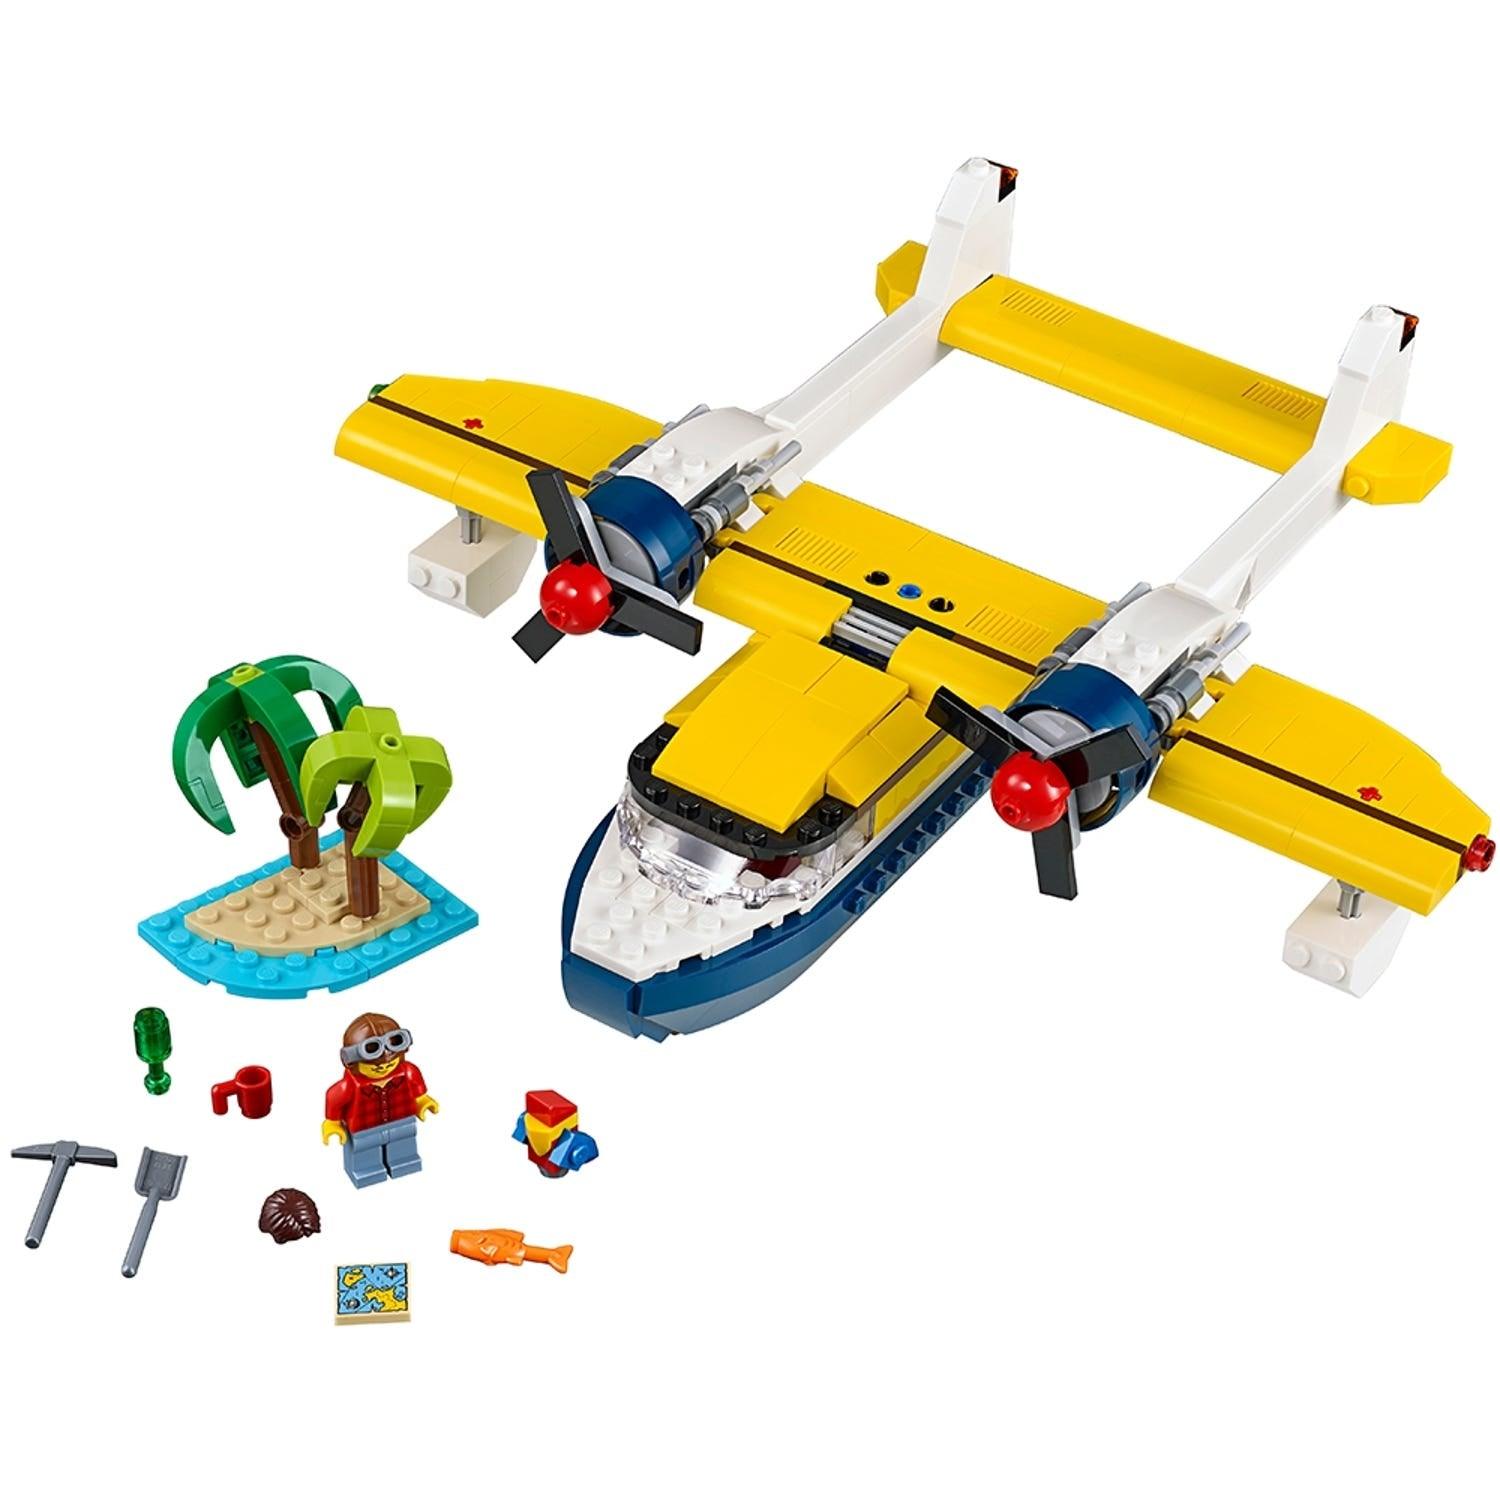 LEGO Eiland-avonturen vliegtuig 31064 Creator 3-in-1 LEGO CREATOR @ 2TTOYS LEGO €. 31.49